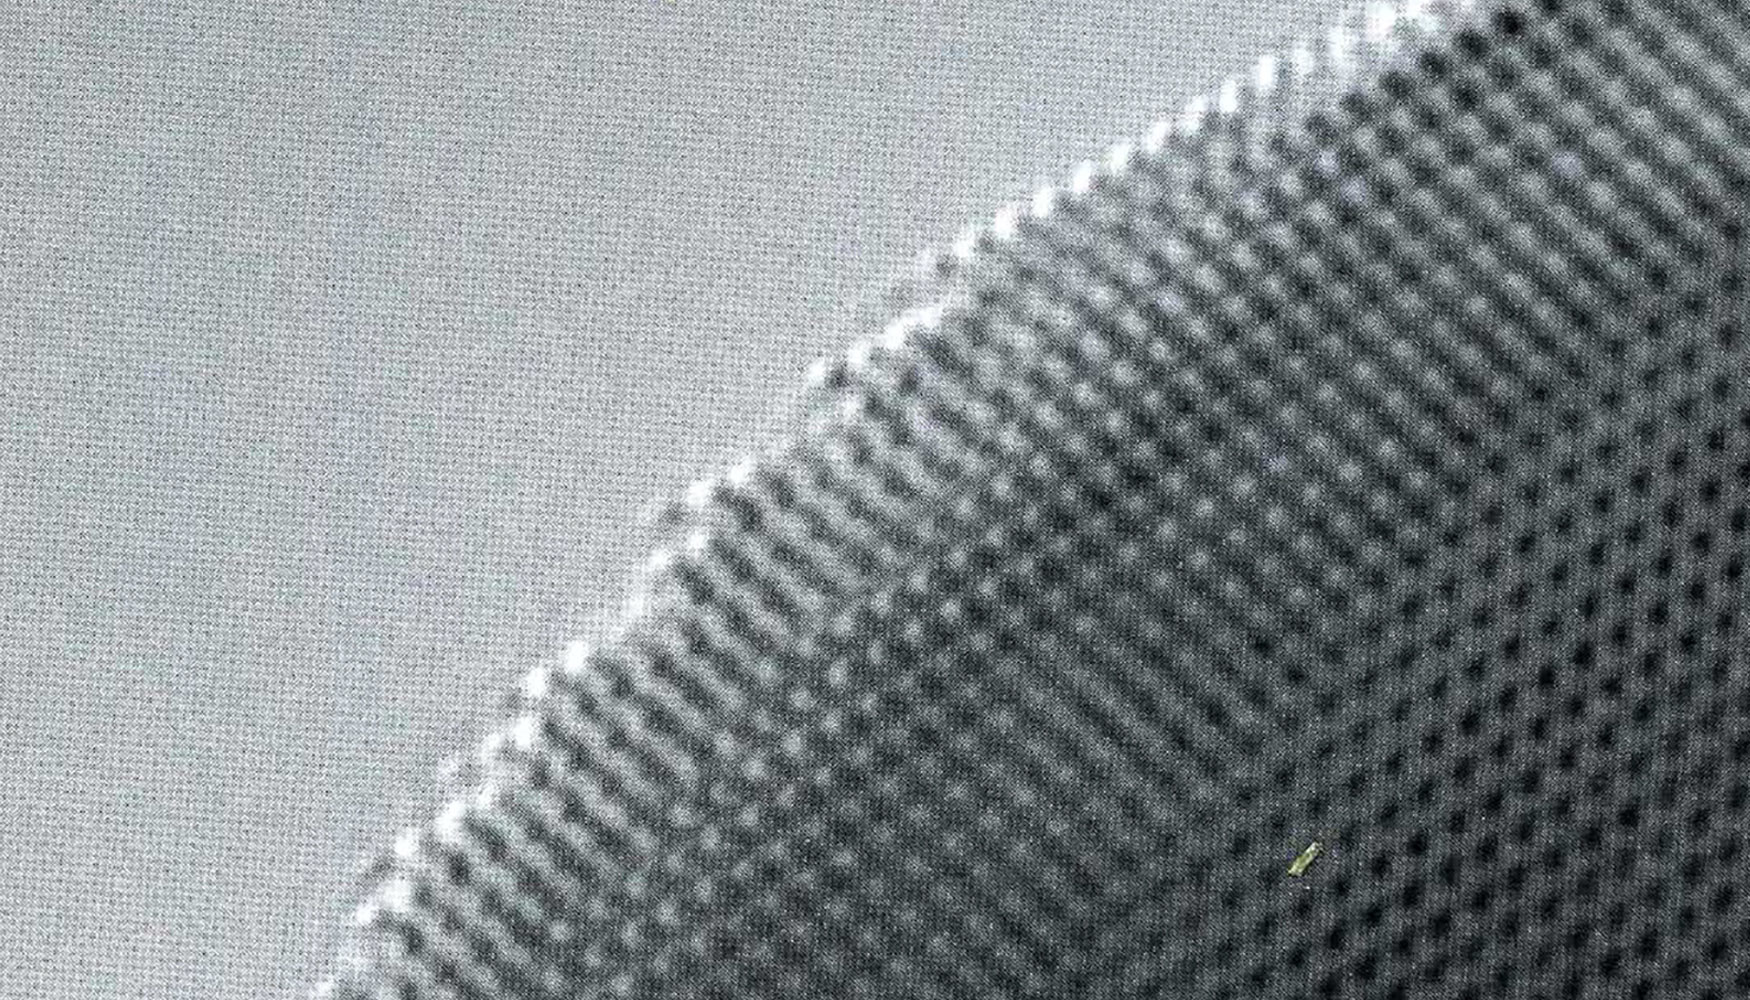 Nanopartcula de plata, la irregularidad de su superficie explica su actividad cataltica, excelente